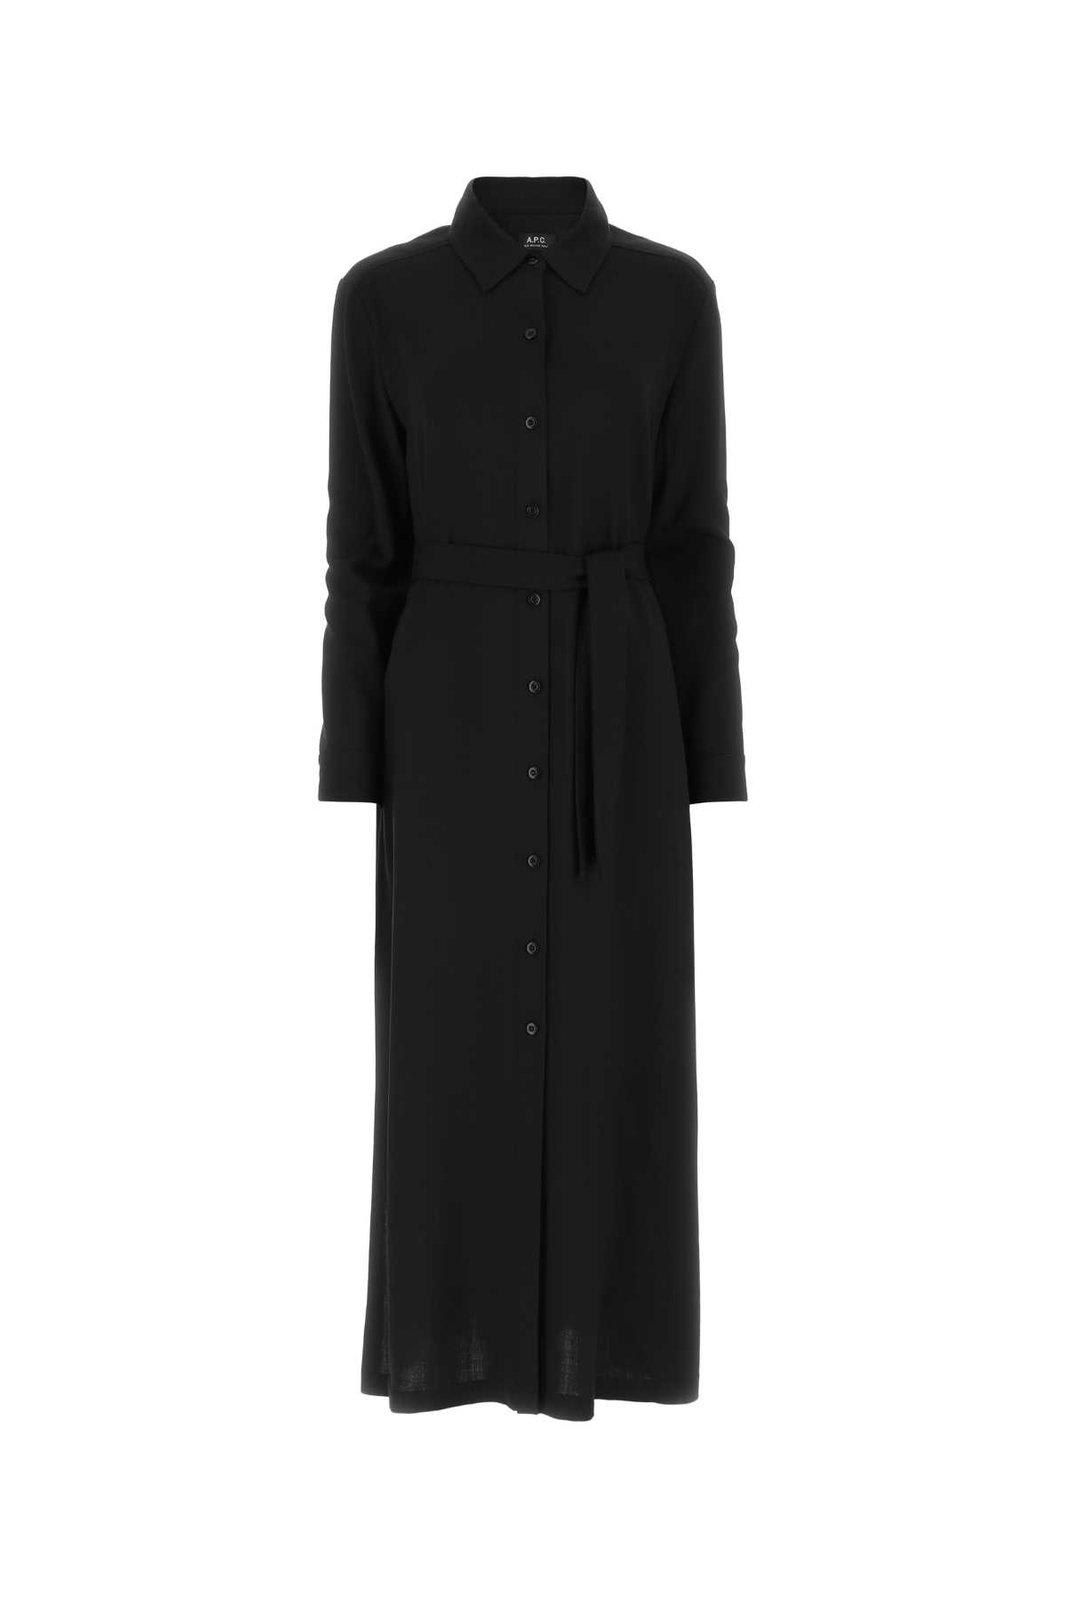 Shop Apc Belted Waist Buttoned Shirt Dress In Lzz Black